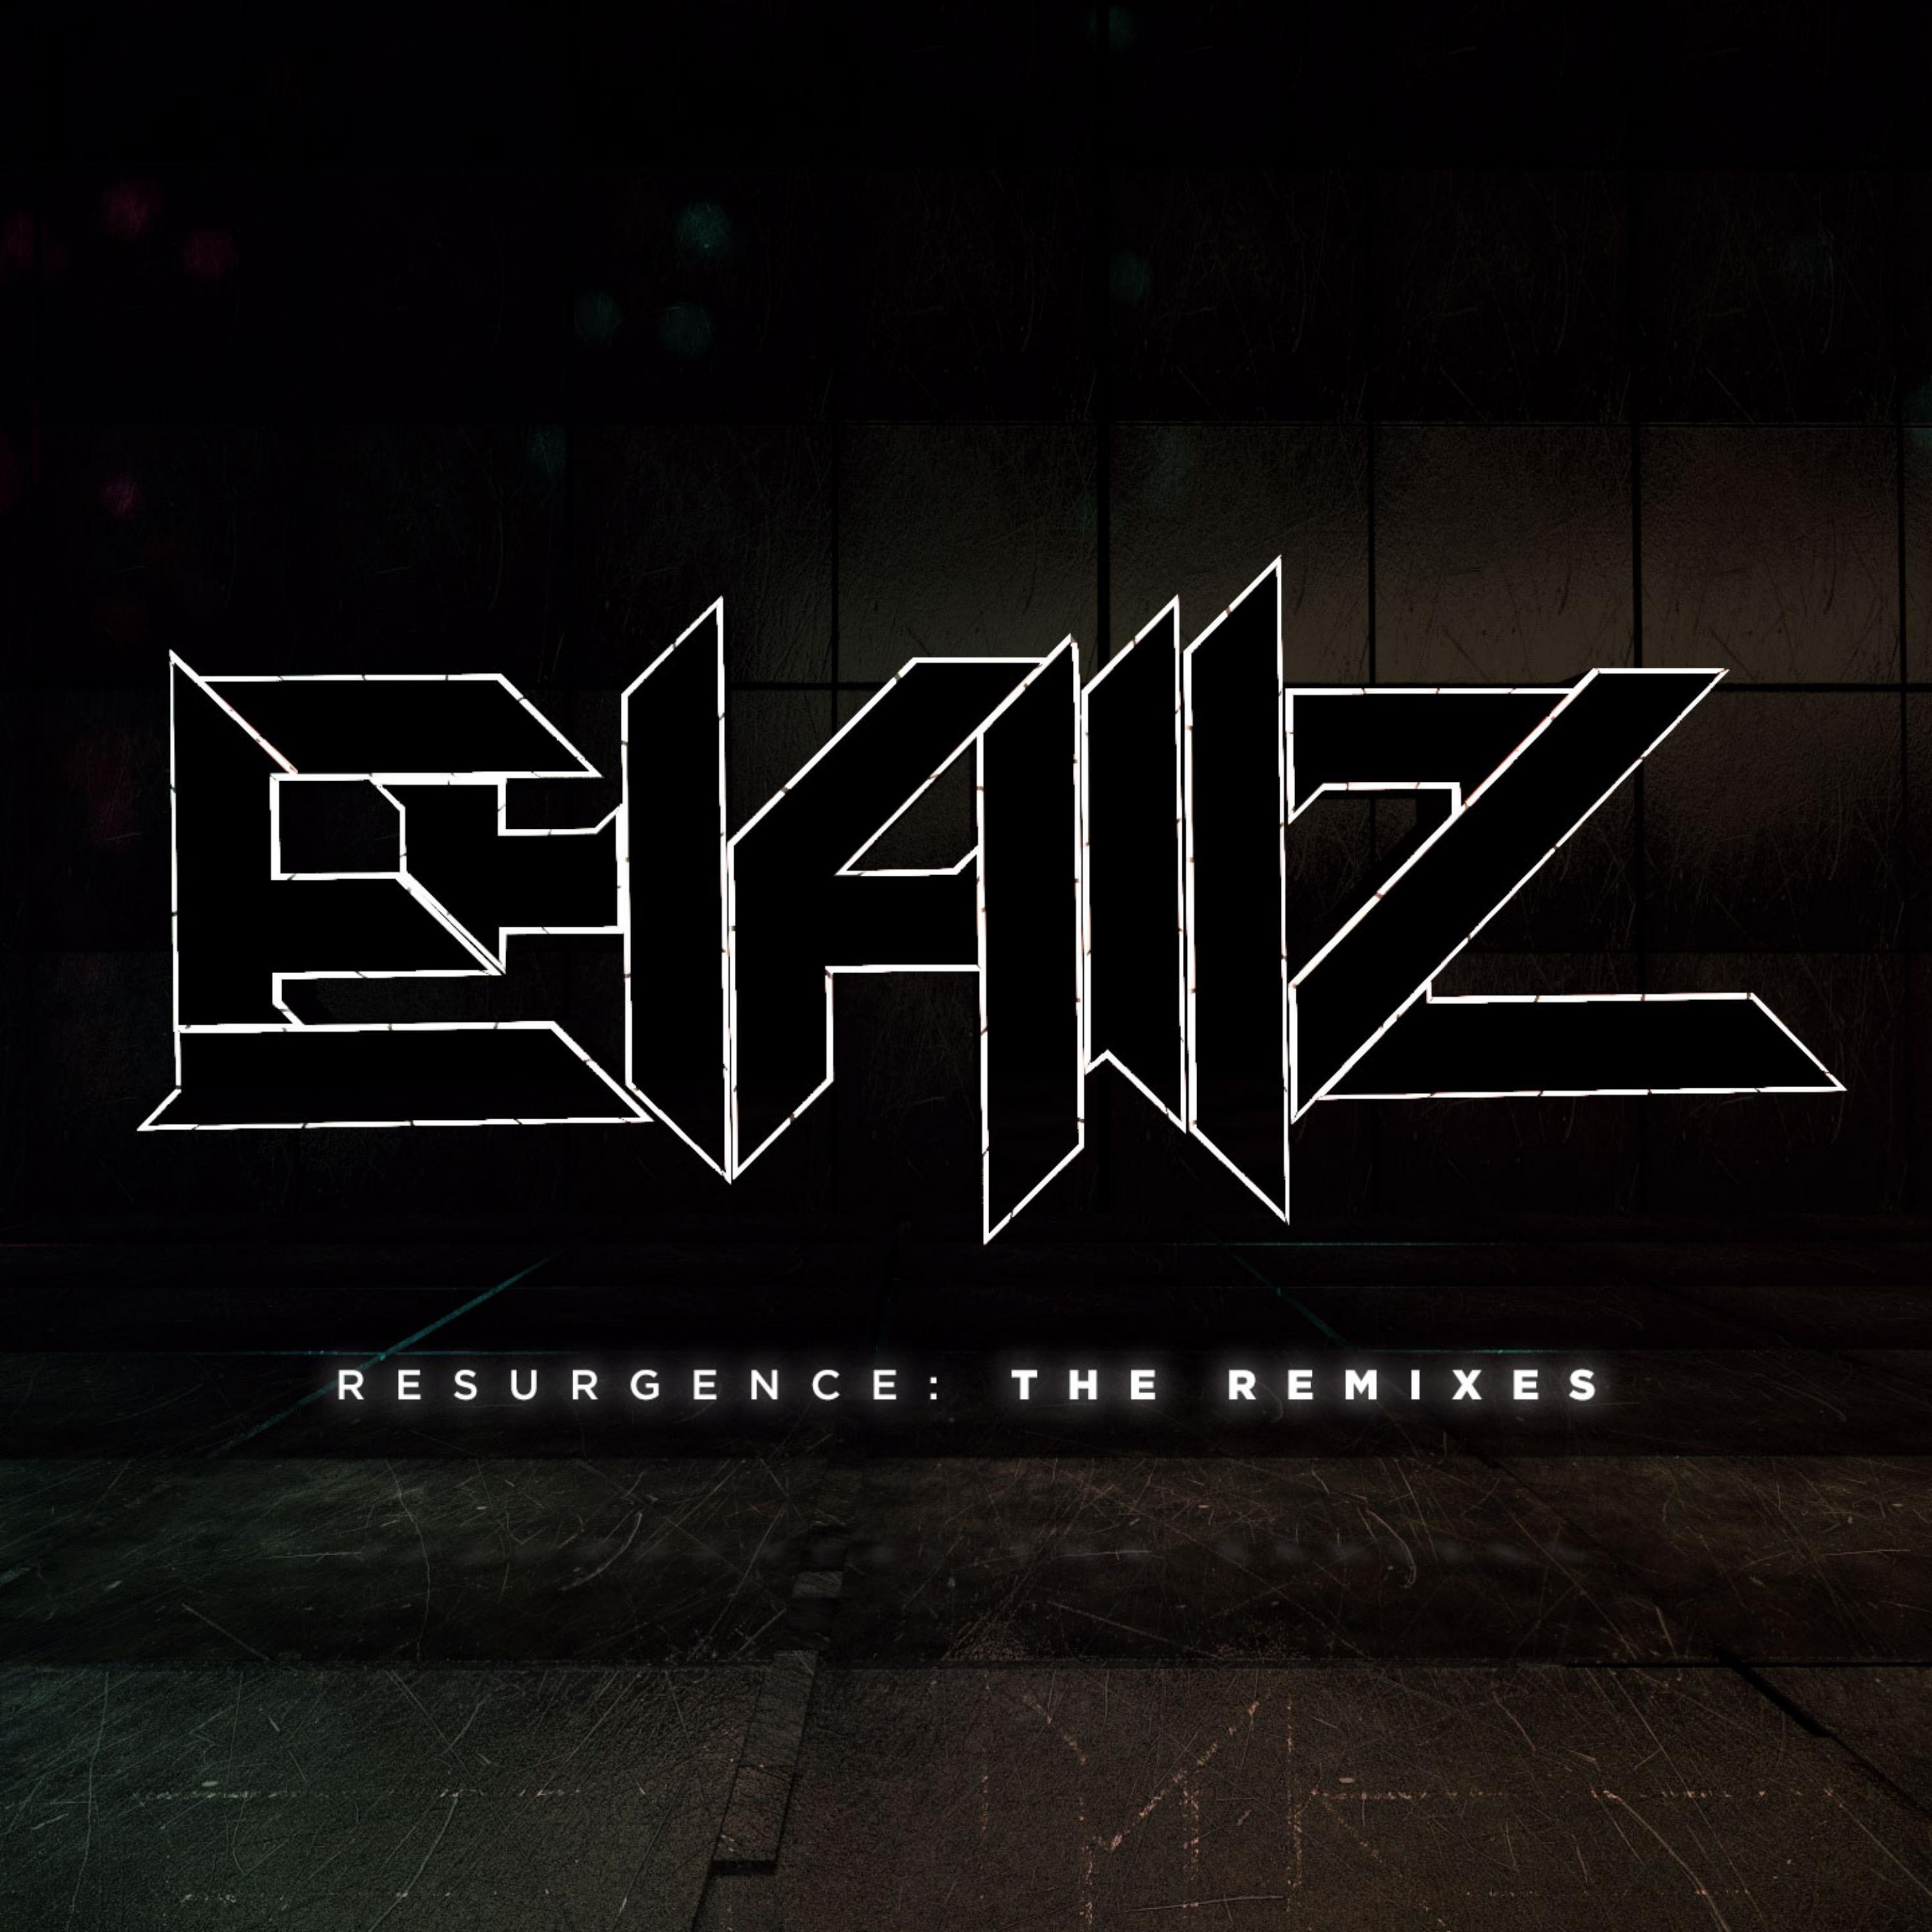 Ehallz - Vision (Finderz Keeperz Remix)